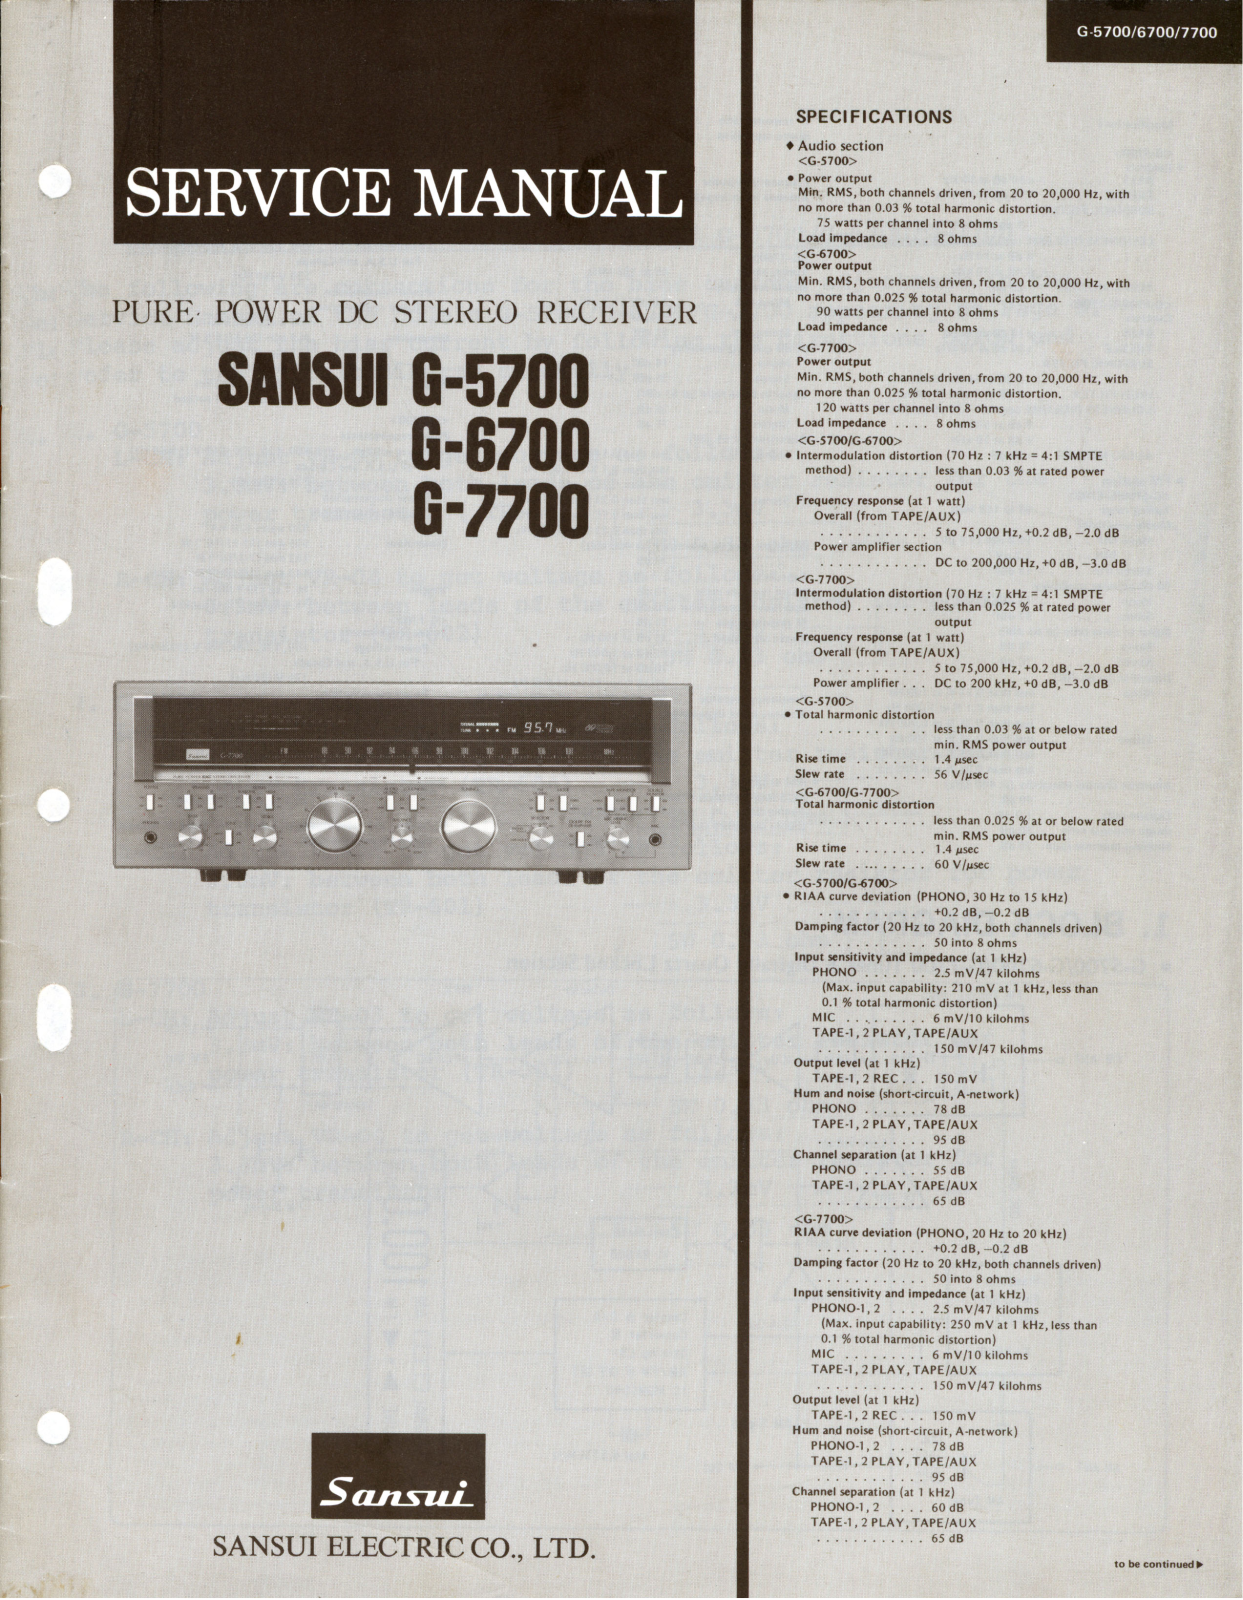 Sansui G-5700, G-7700, G-6700 Service Manual